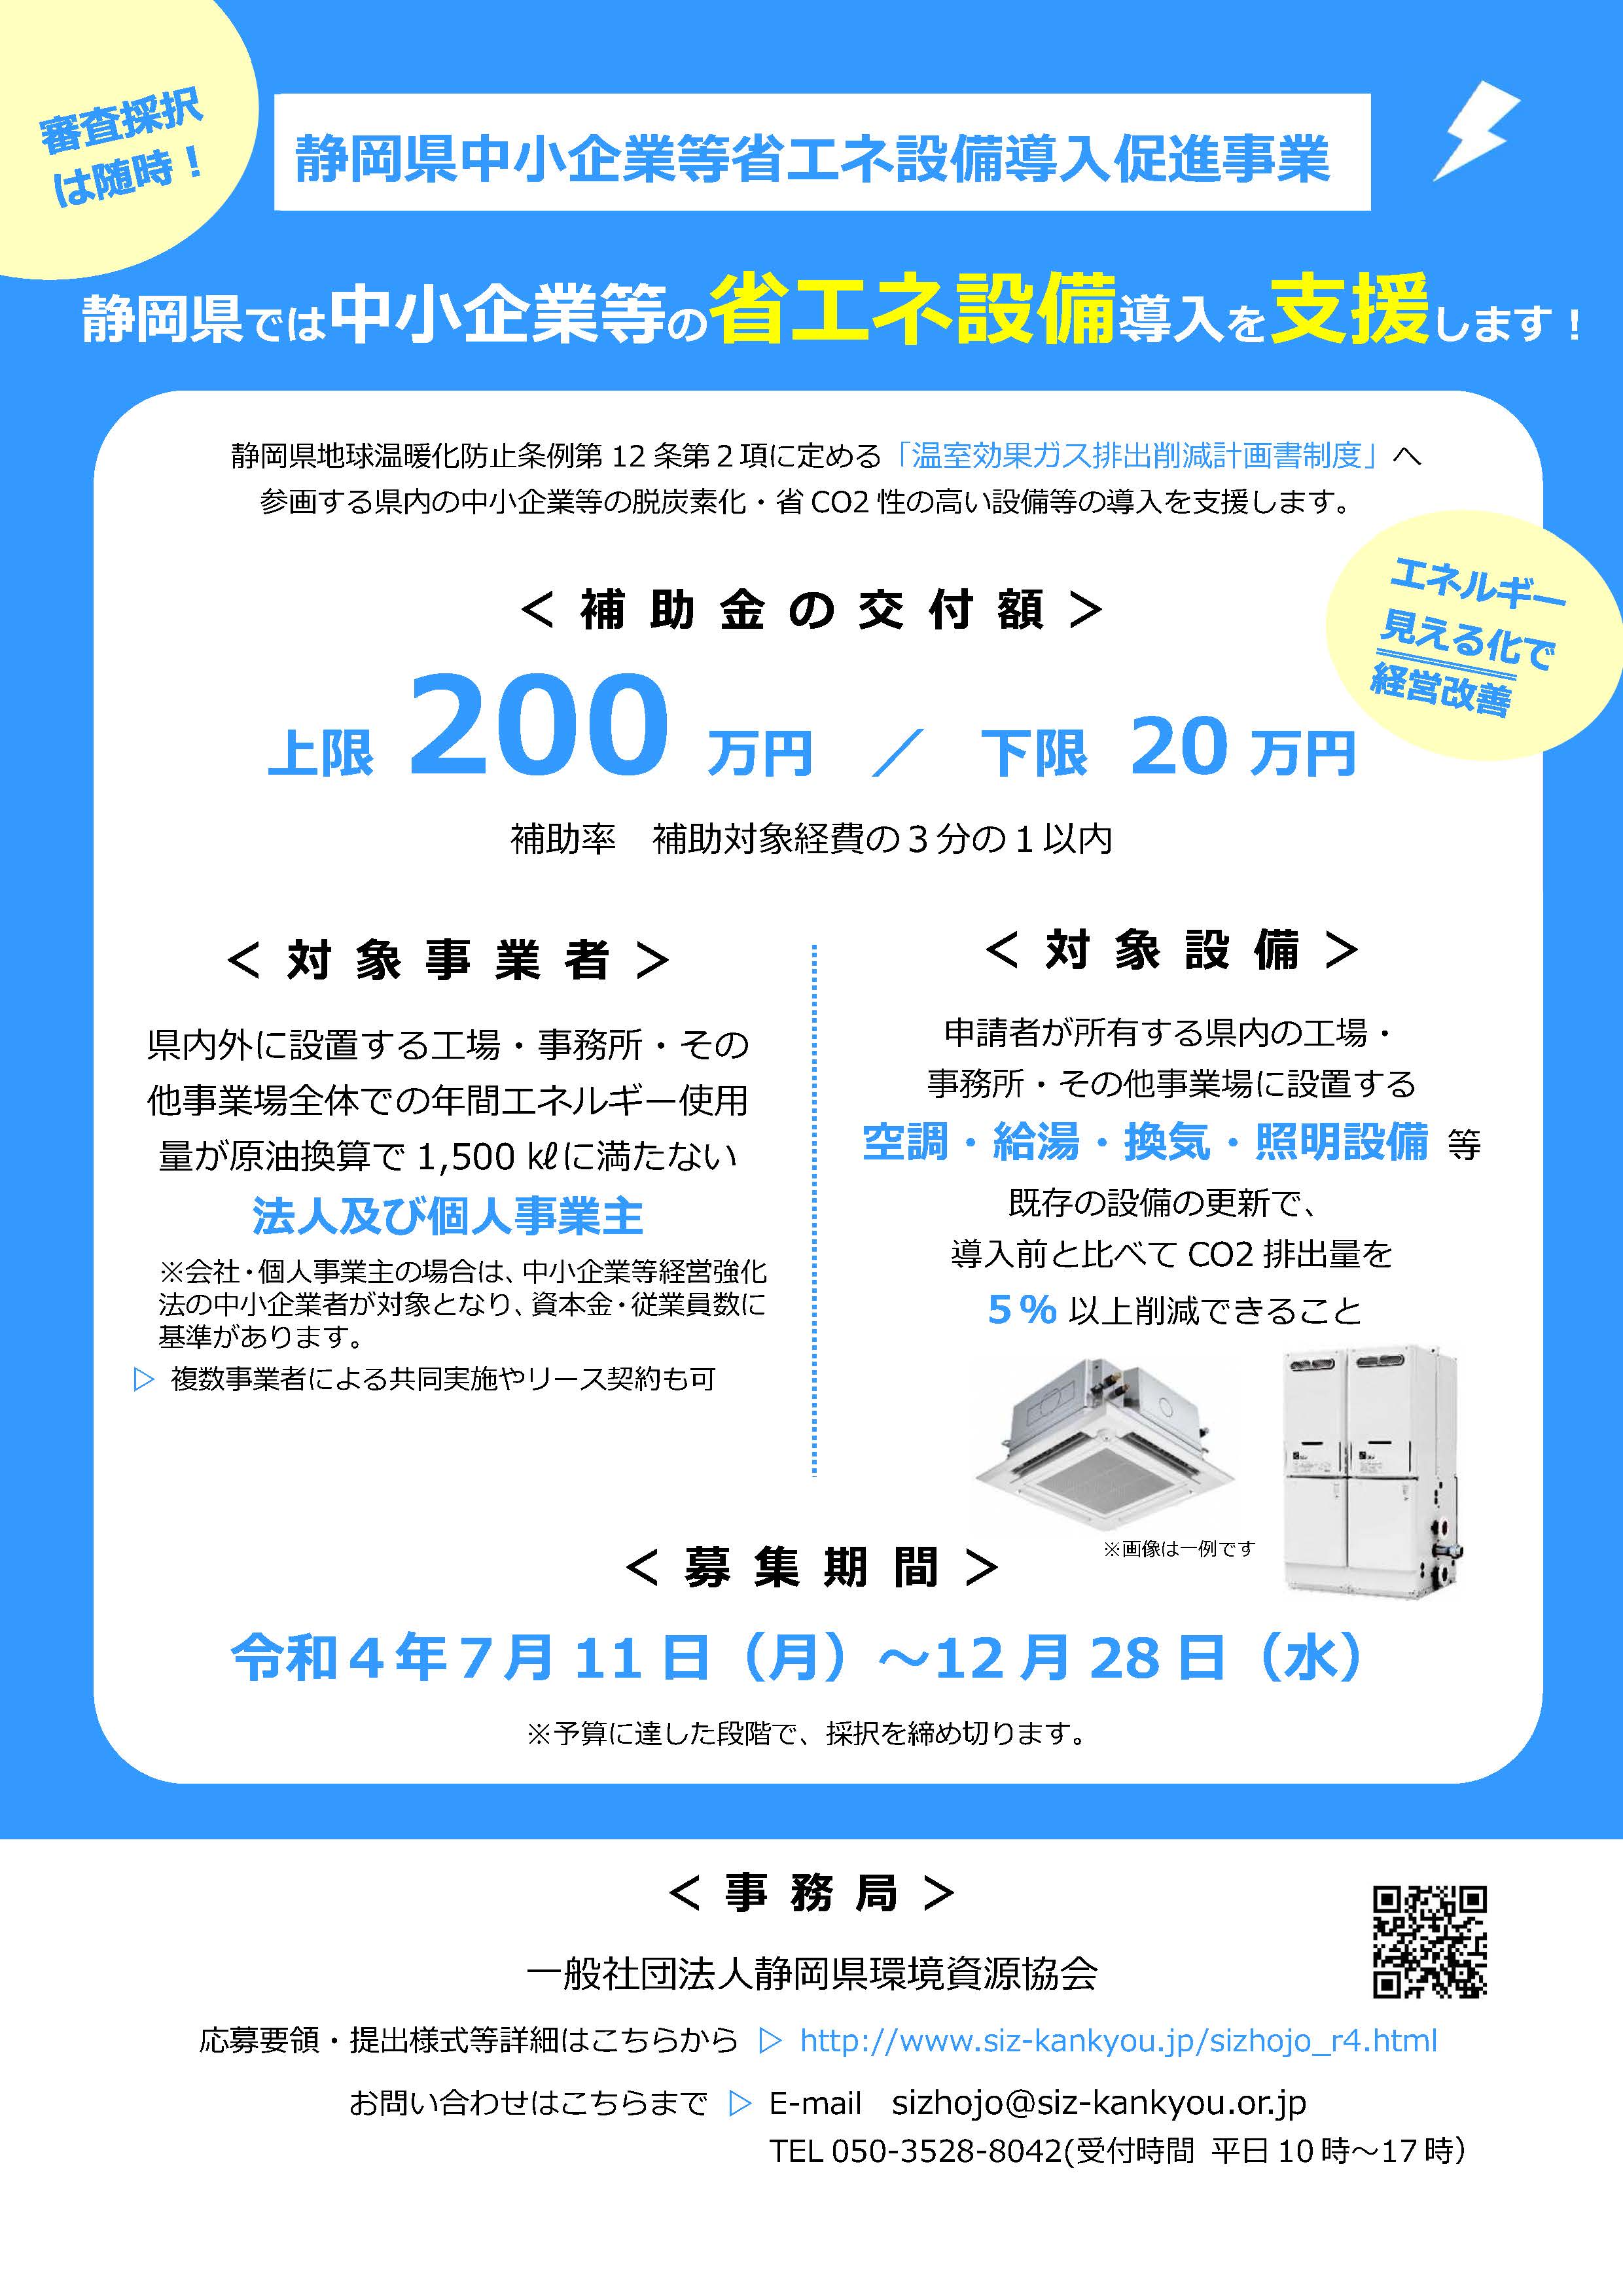 静岡県の中小企業等を対象とした省エネ設備更新補助金のご案内（上限200万円、補助率1/3）